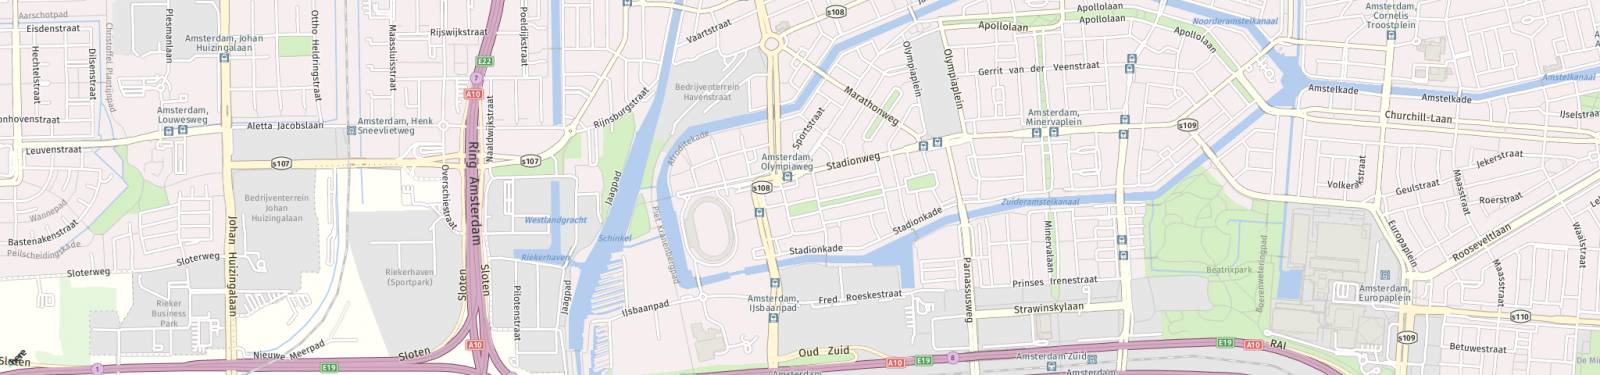 Kaart met locatie Appartement Stadionweg